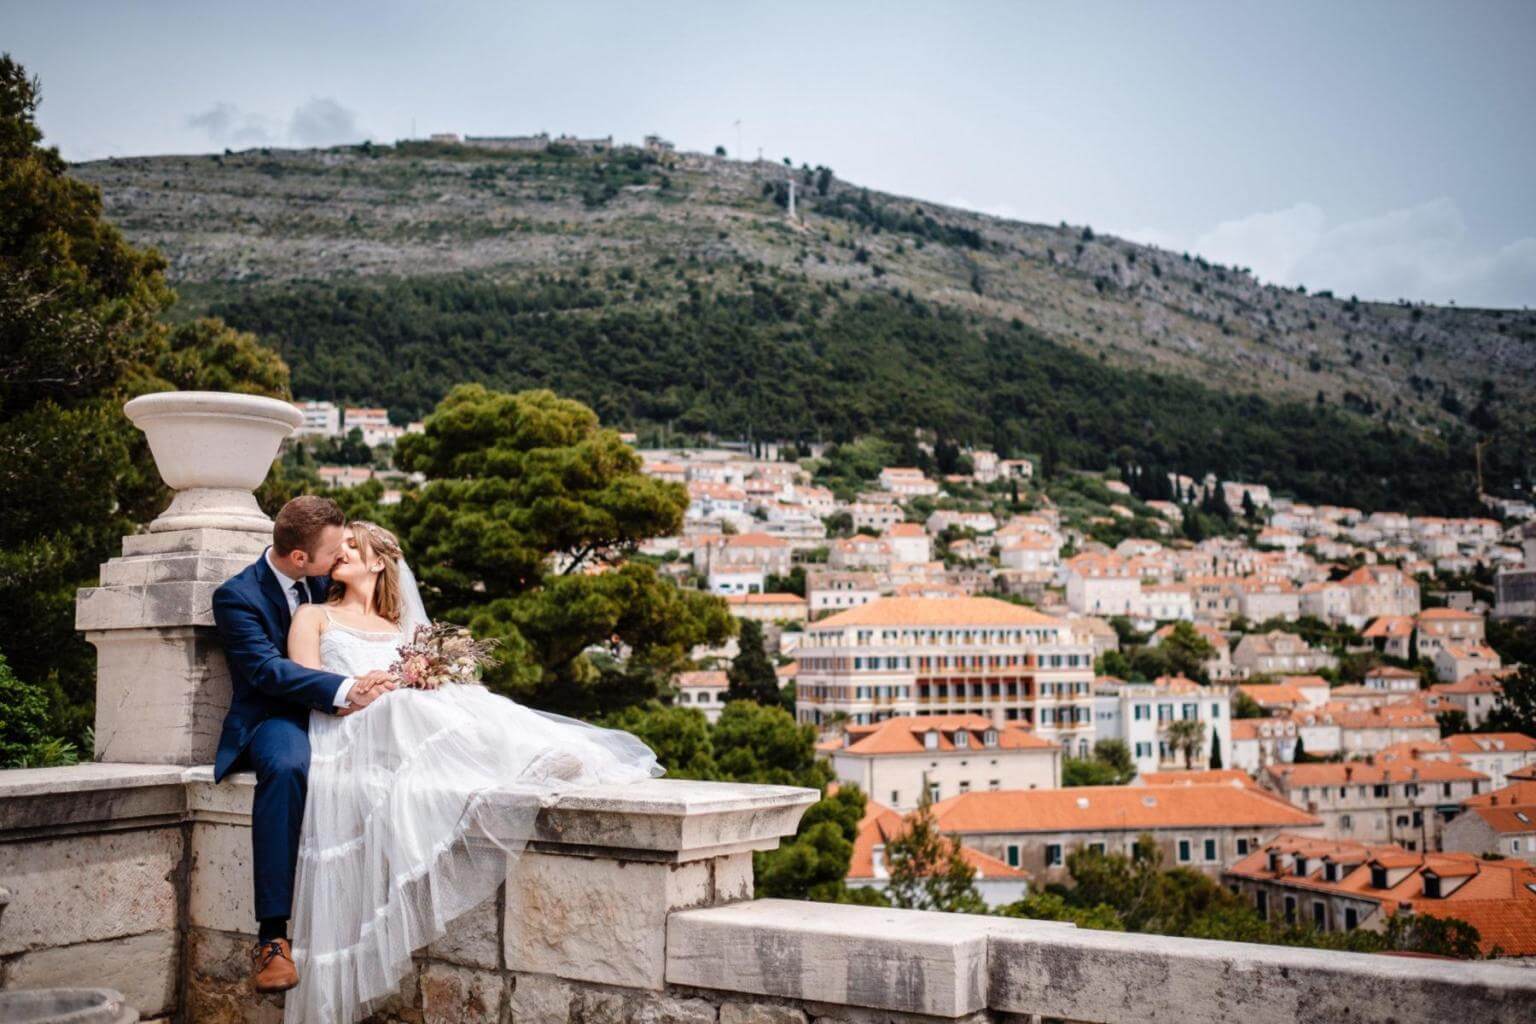 Brautpaar auf Mauer bei Hochzeit in Kroatien